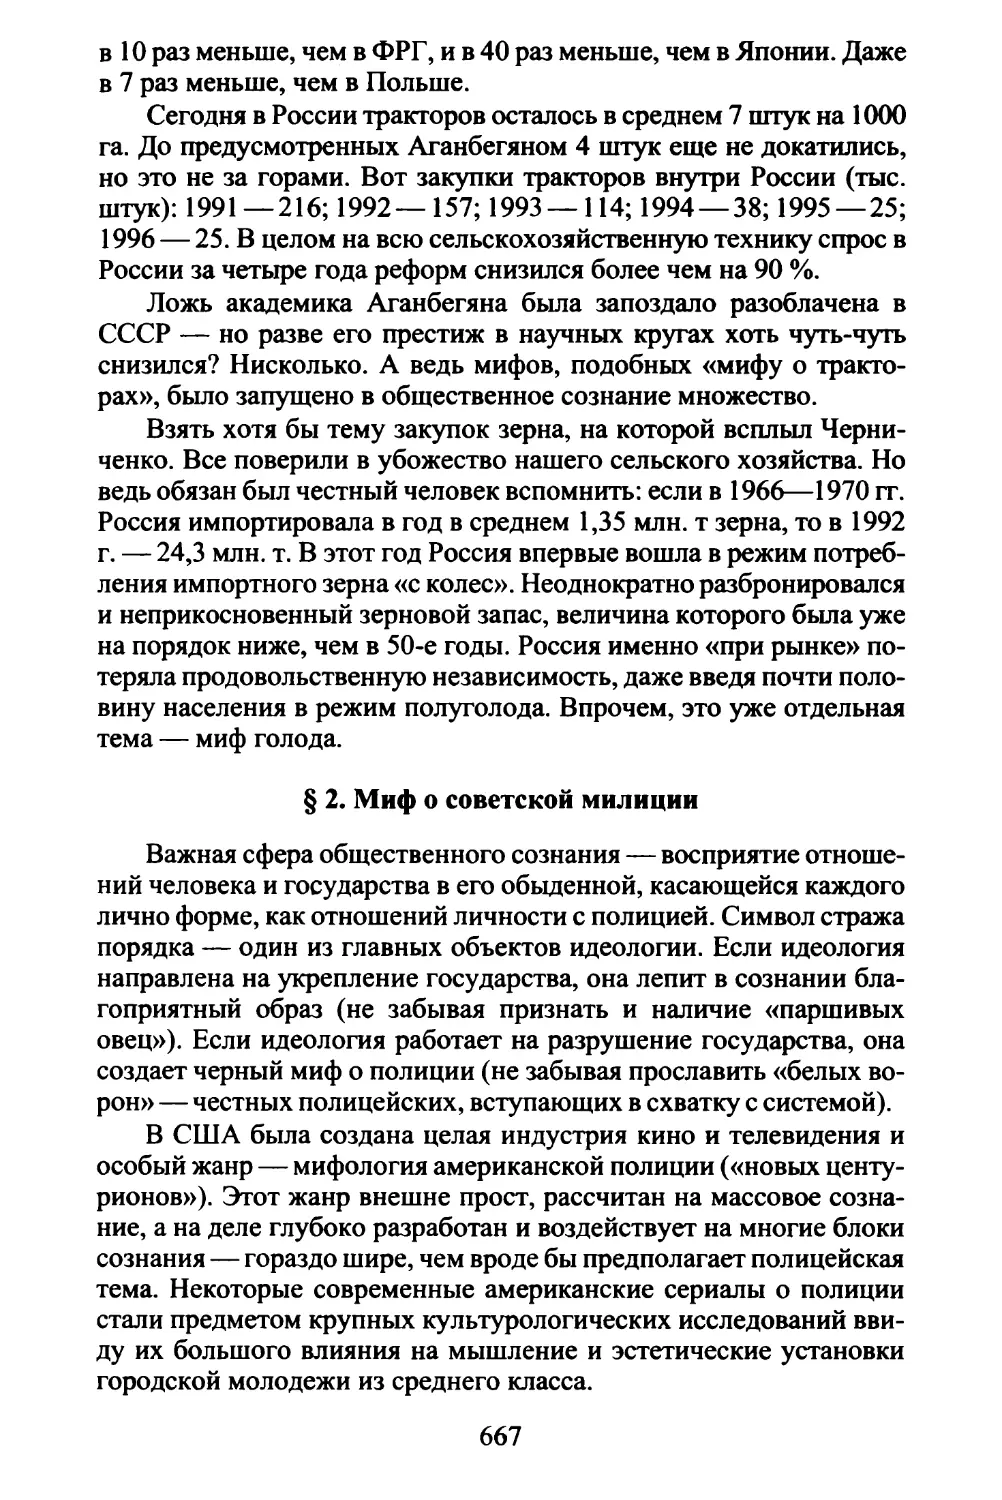 § 2. Миф о советской милиции